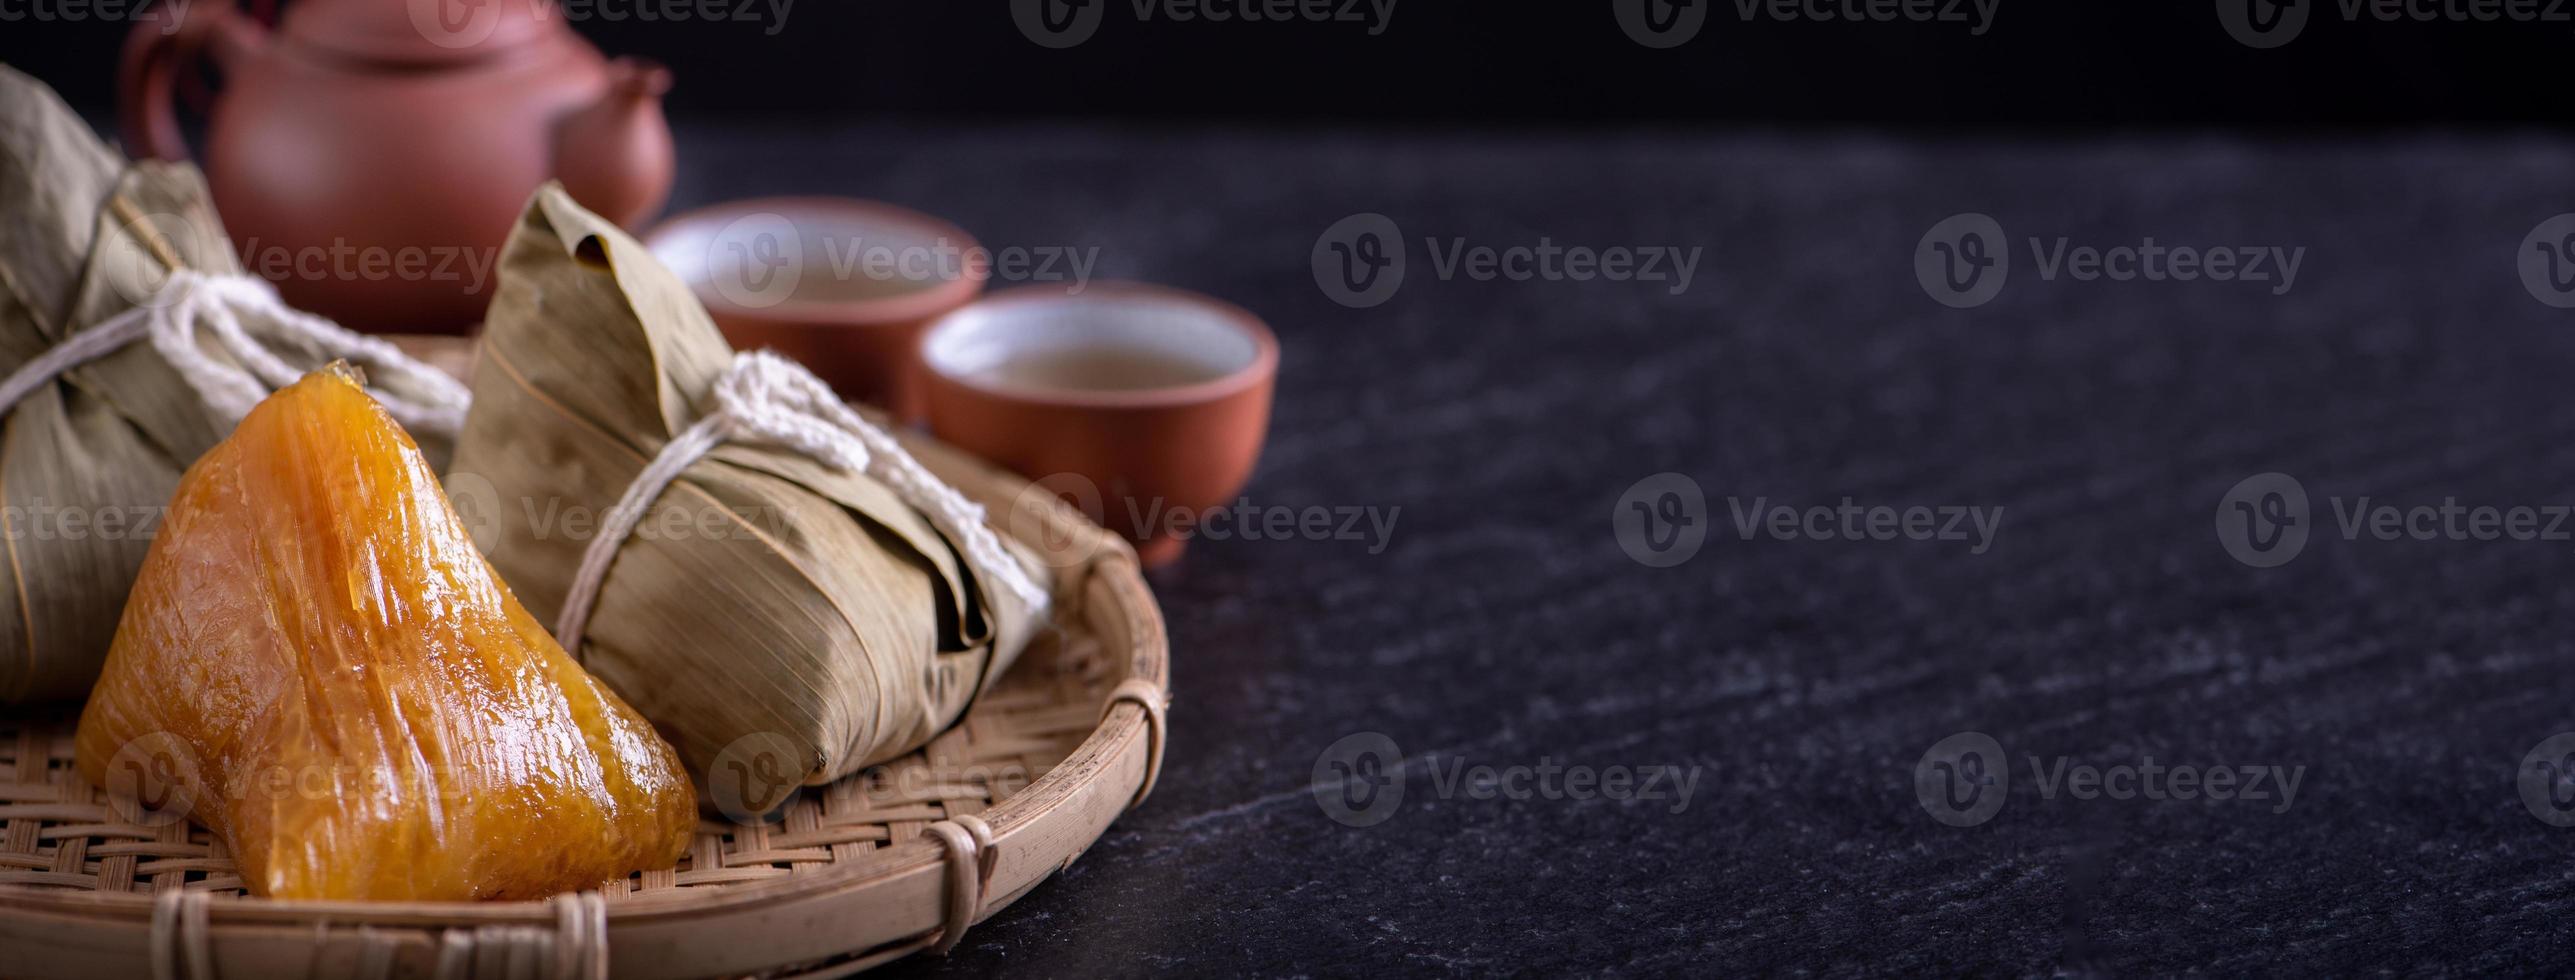 bola de masa hervida de arroz alcalino zongzi - comida china dulce tradicional de cristal en un plato para comer para el concepto de celebración del festival duanwu del barco dragón, de cerca. foto